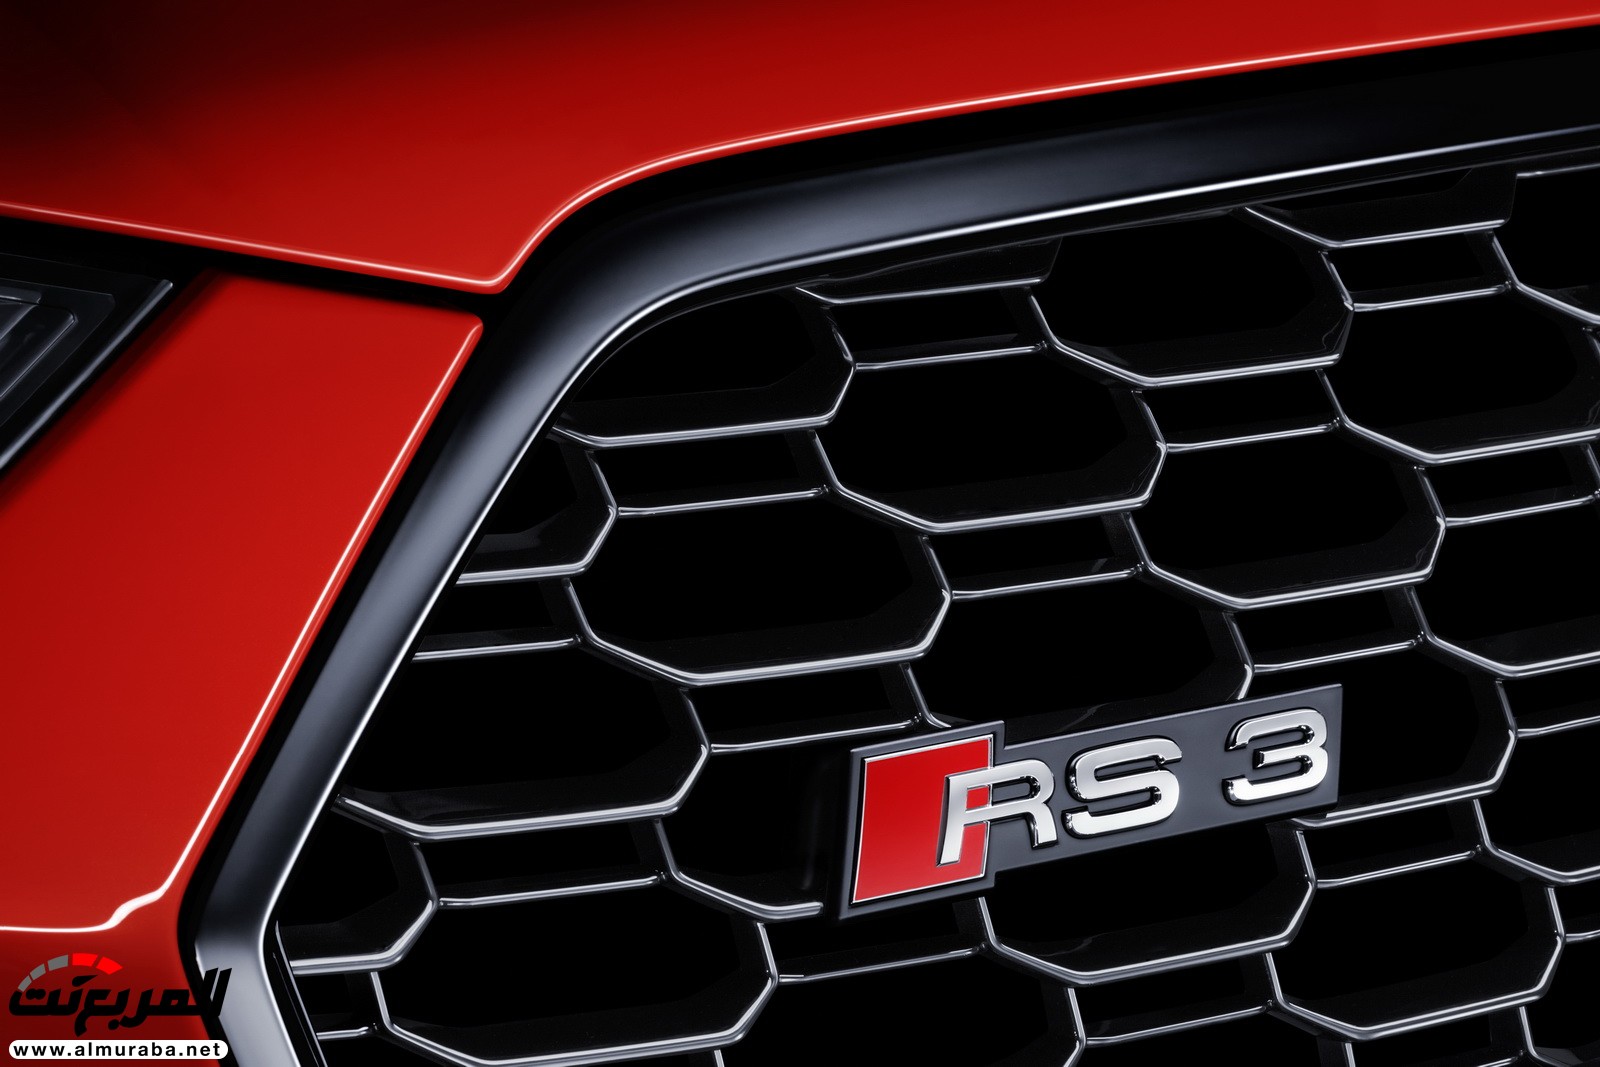 "أودي" تكشف عن RS3 الجديدة كليا 2018 بقوة 395 حصان Audi 35